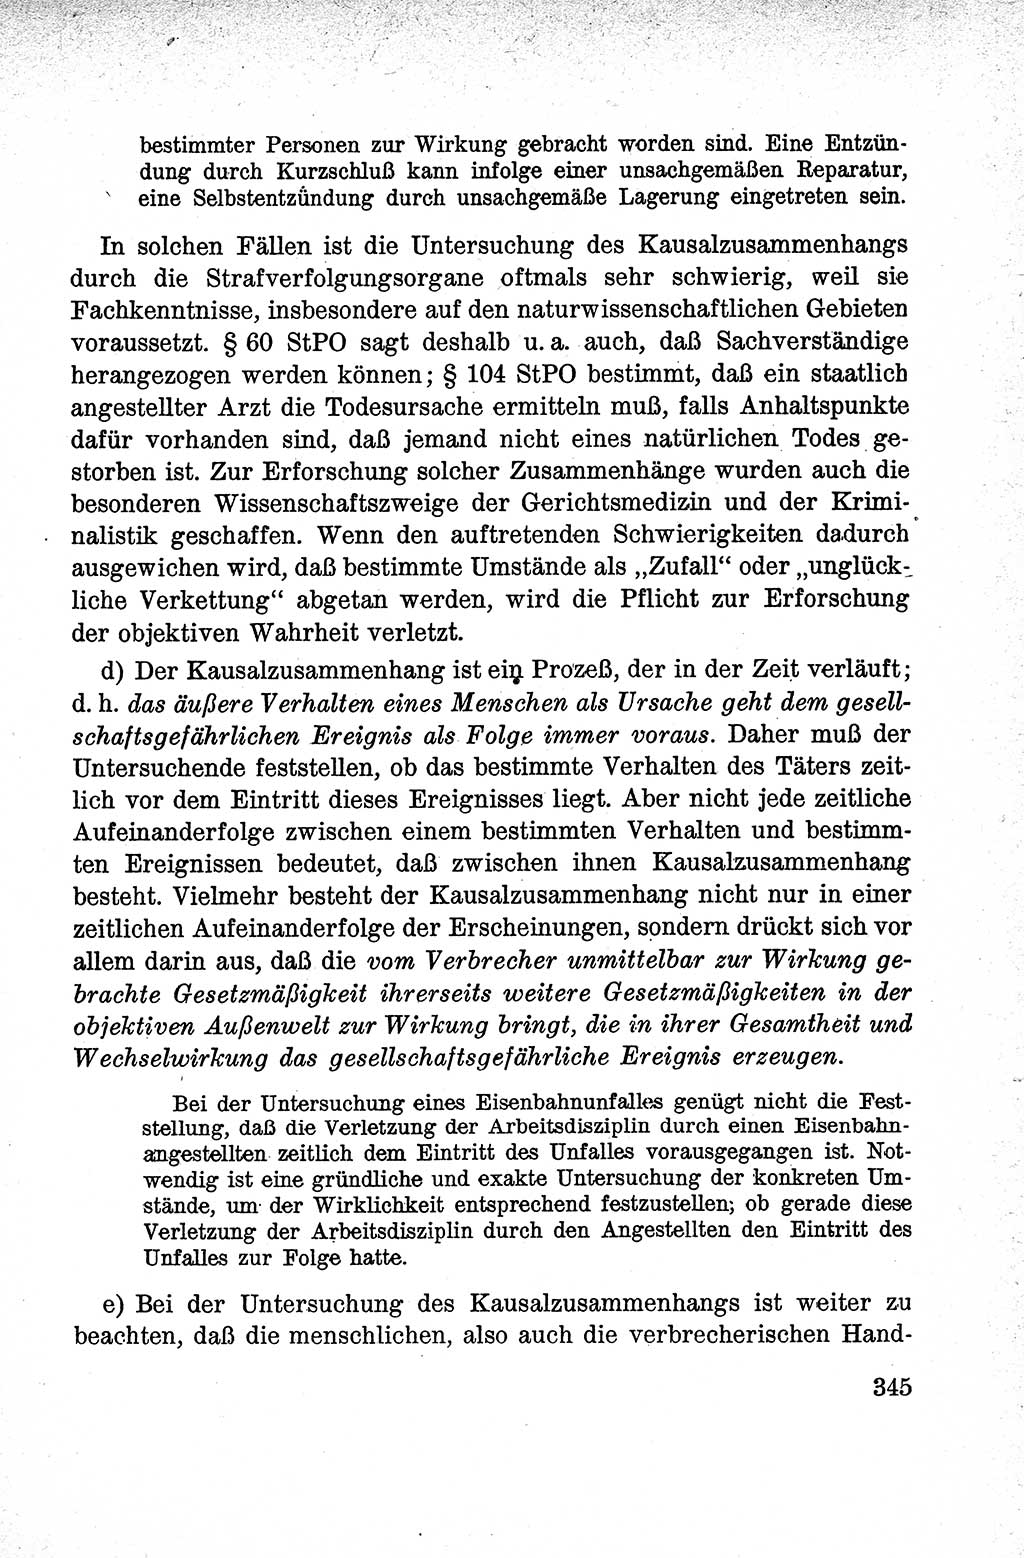 Lehrbuch des Strafrechts der Deutschen Demokratischen Republik (DDR), Allgemeiner Teil 1959, Seite 345 (Lb. Strafr. DDR AT 1959, S. 345)